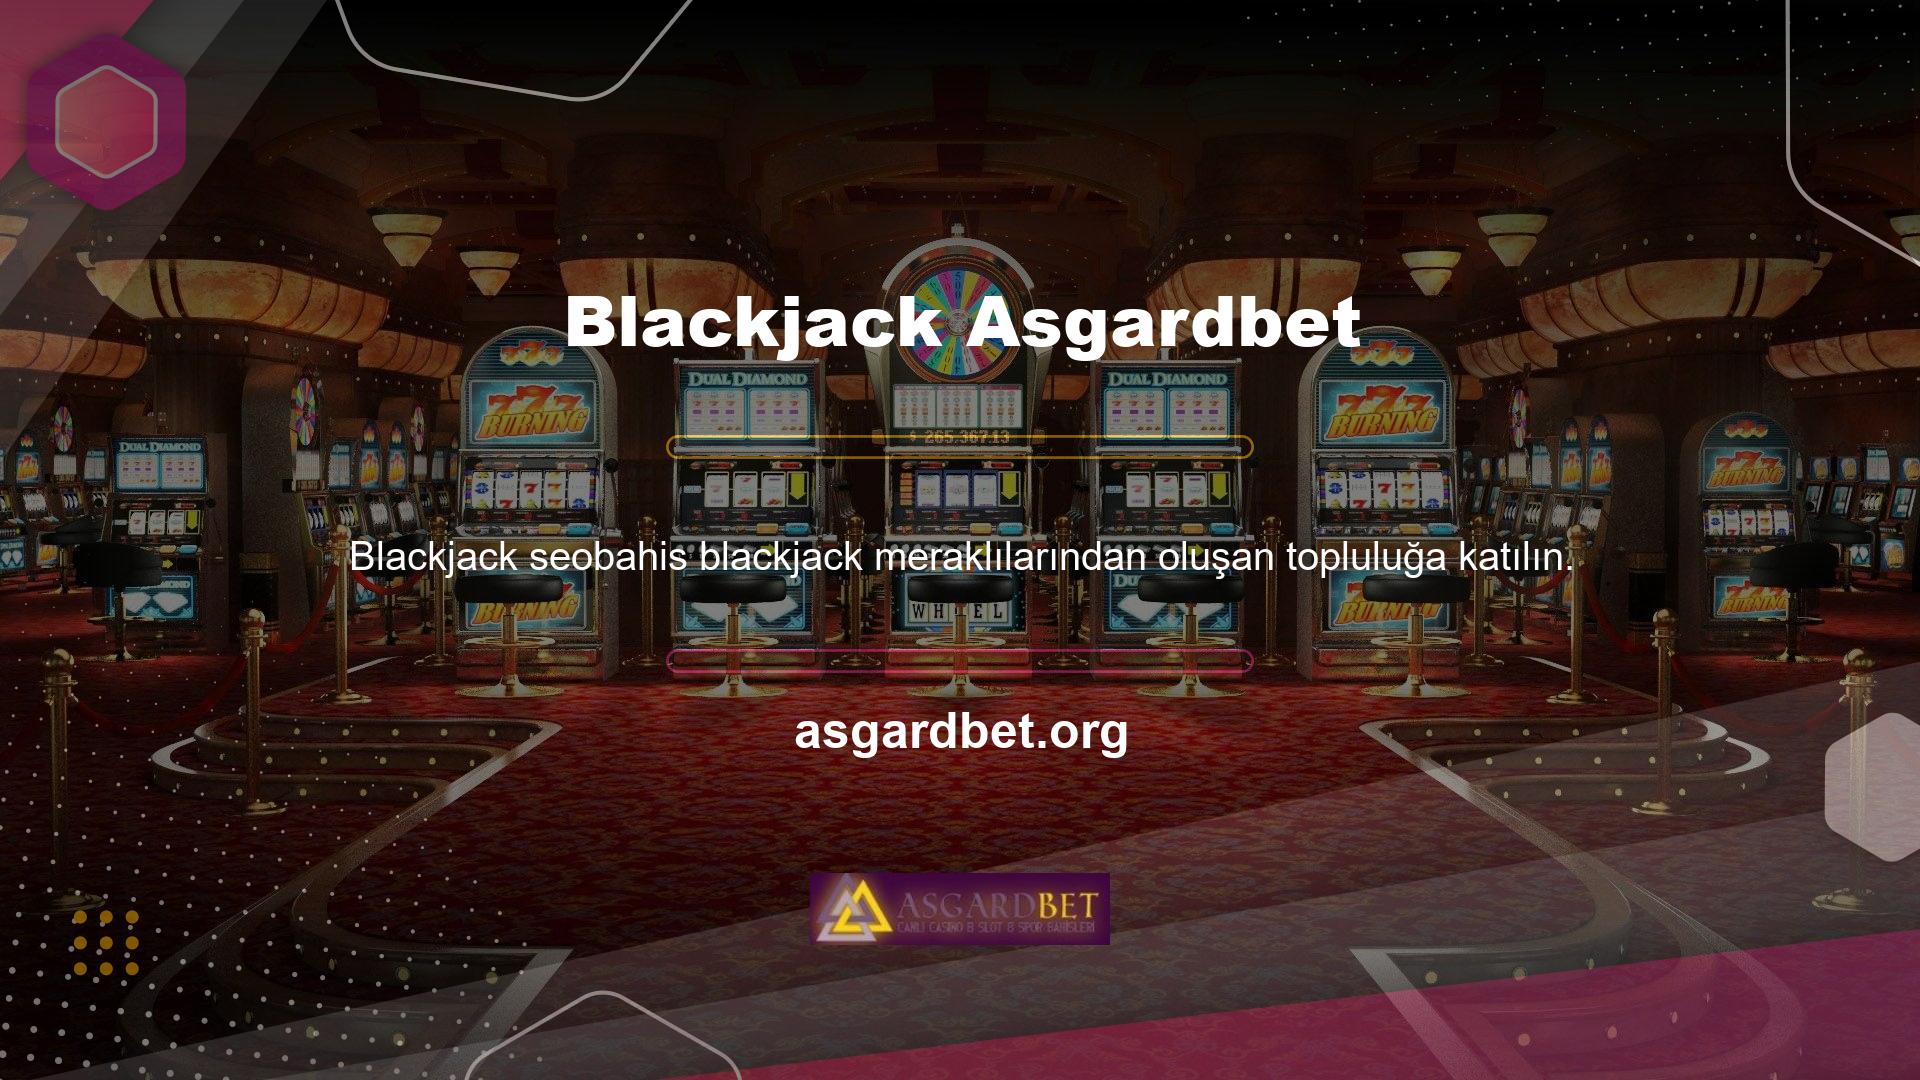 Blackjack, oyununa atıfta bulunmak için kullanılan küresel bir terimdir